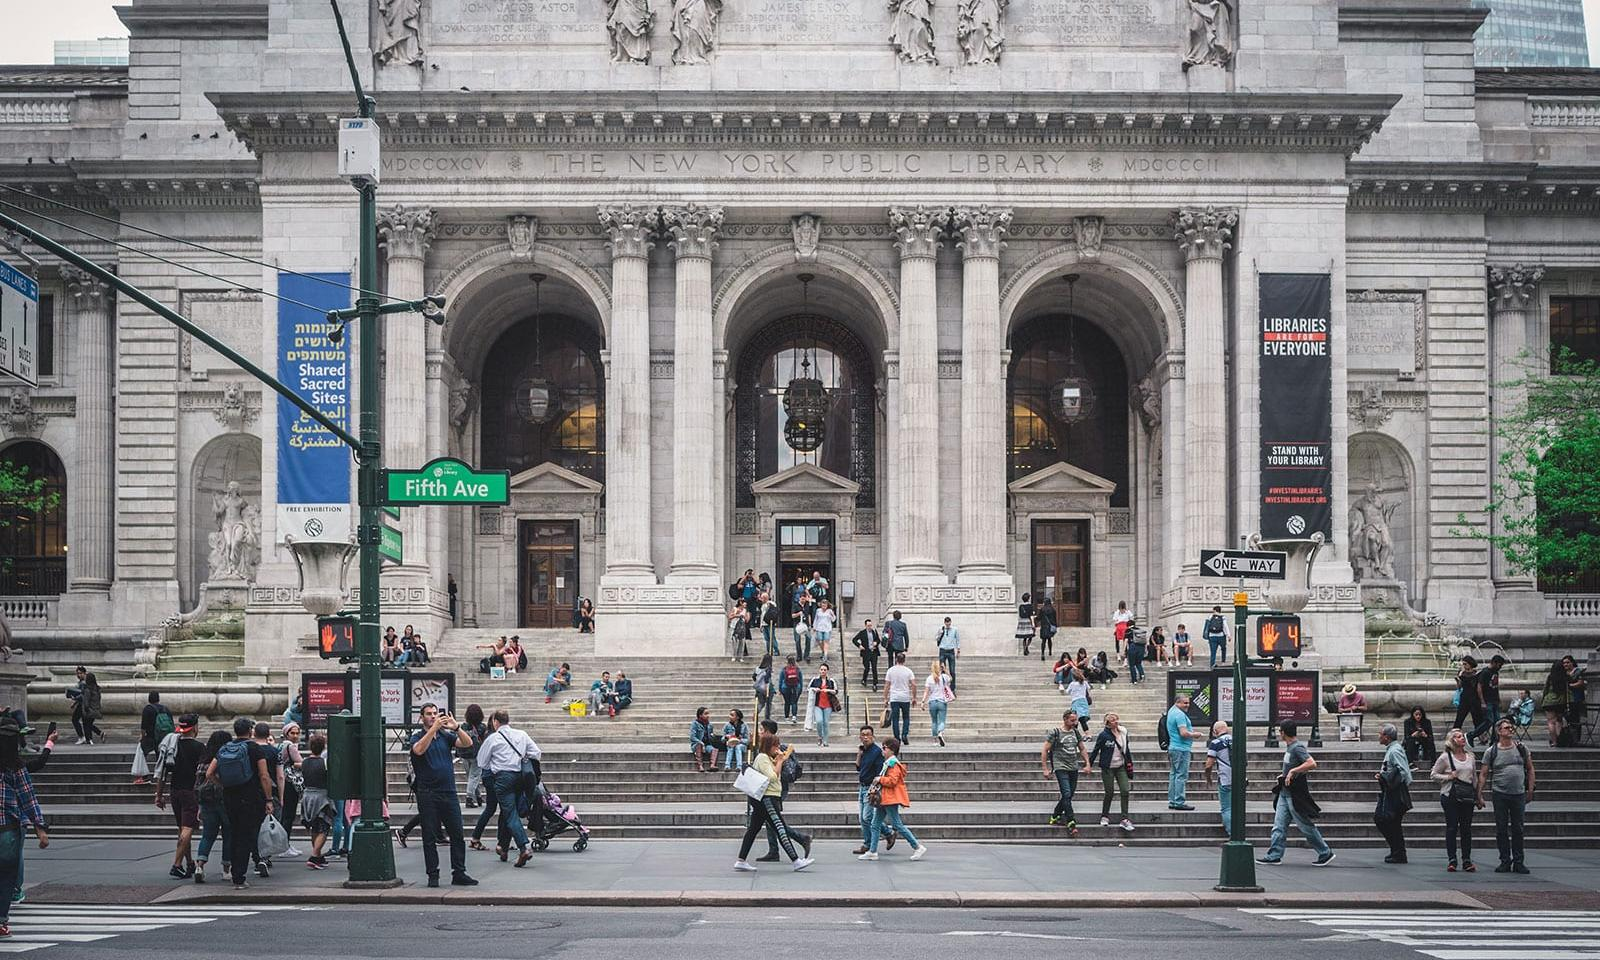 Thư viện thành phố New York, điểm đến thăm quan của nhiều du khách yêu thích văn học